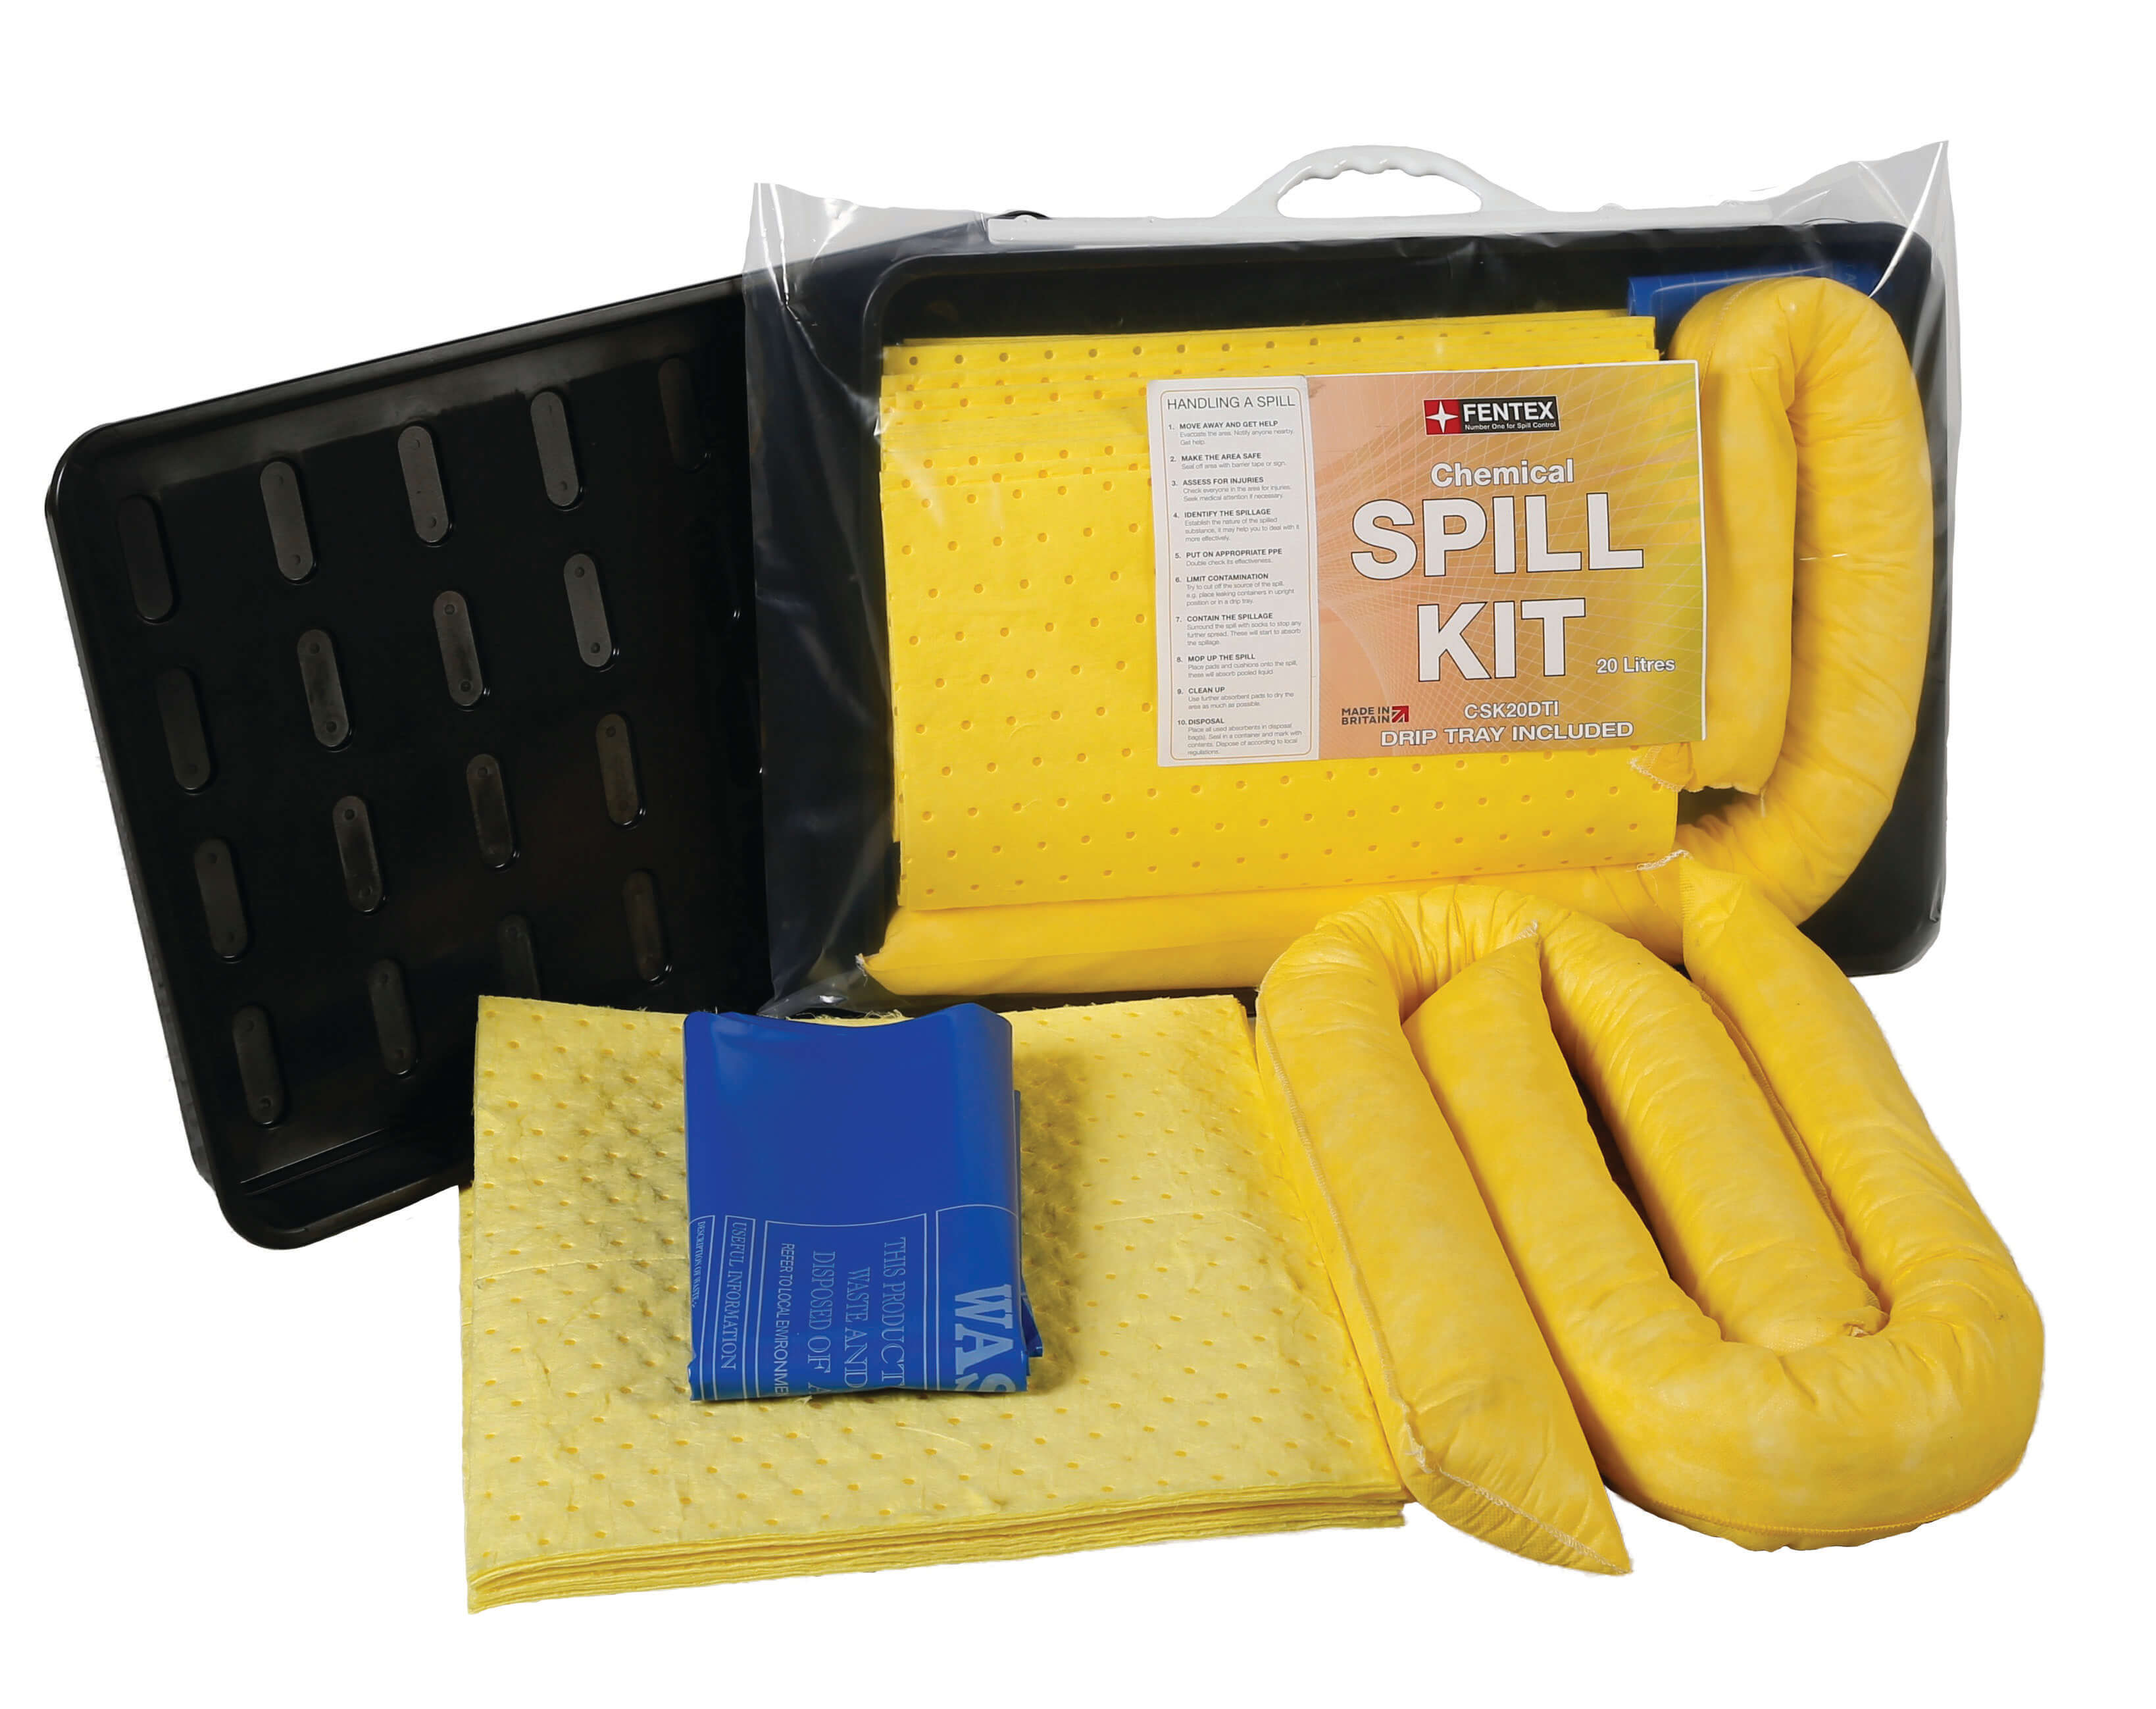 20 litre Chemical Spill Kit